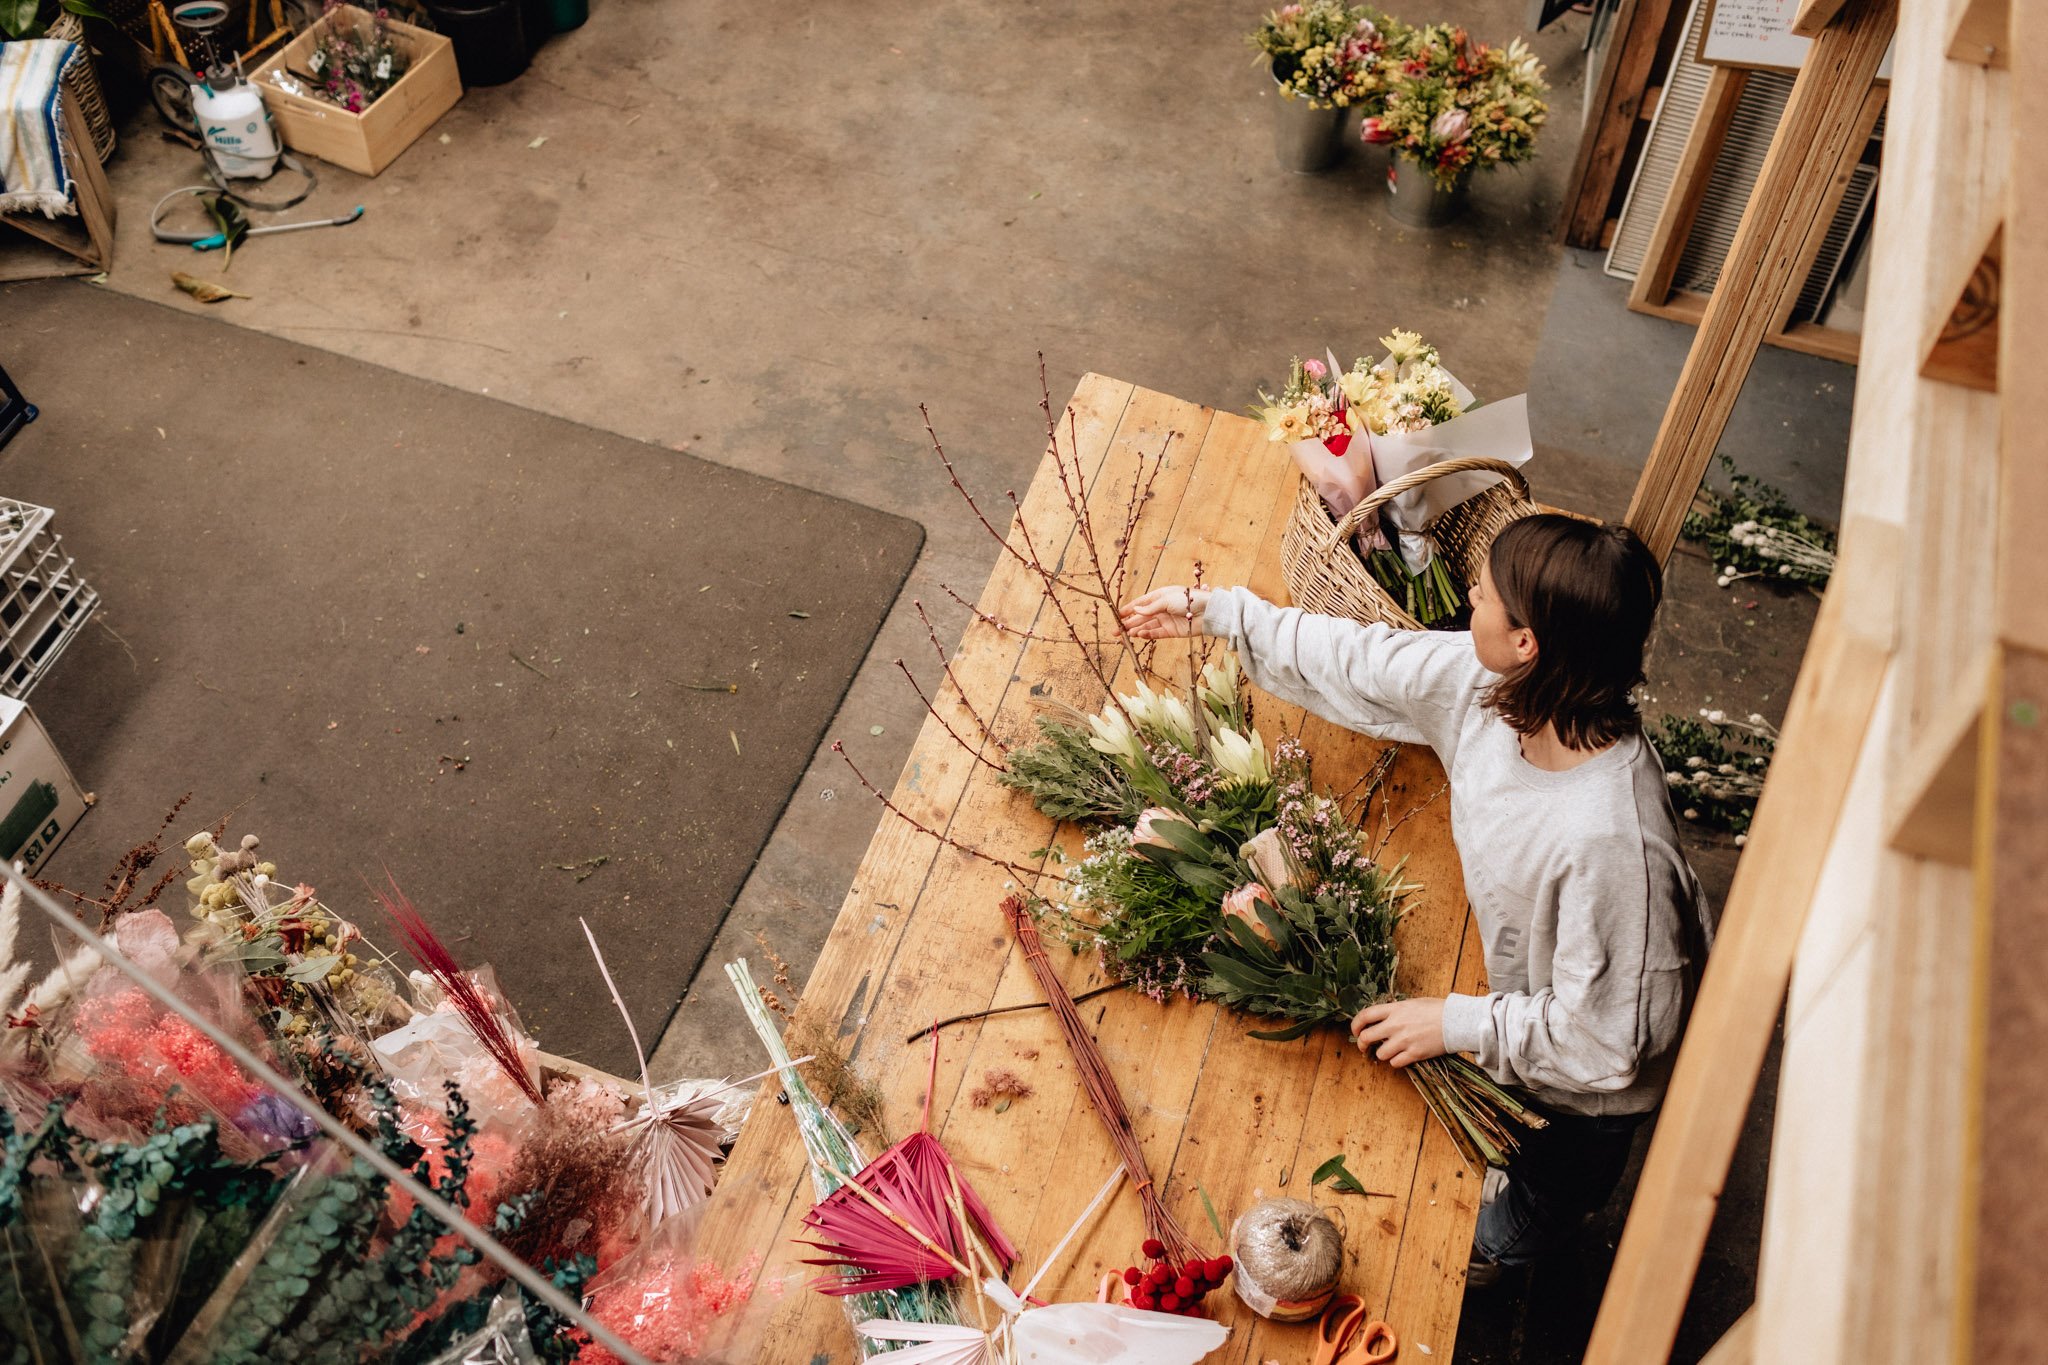 geelong artist arranging flowers at bench.jpg